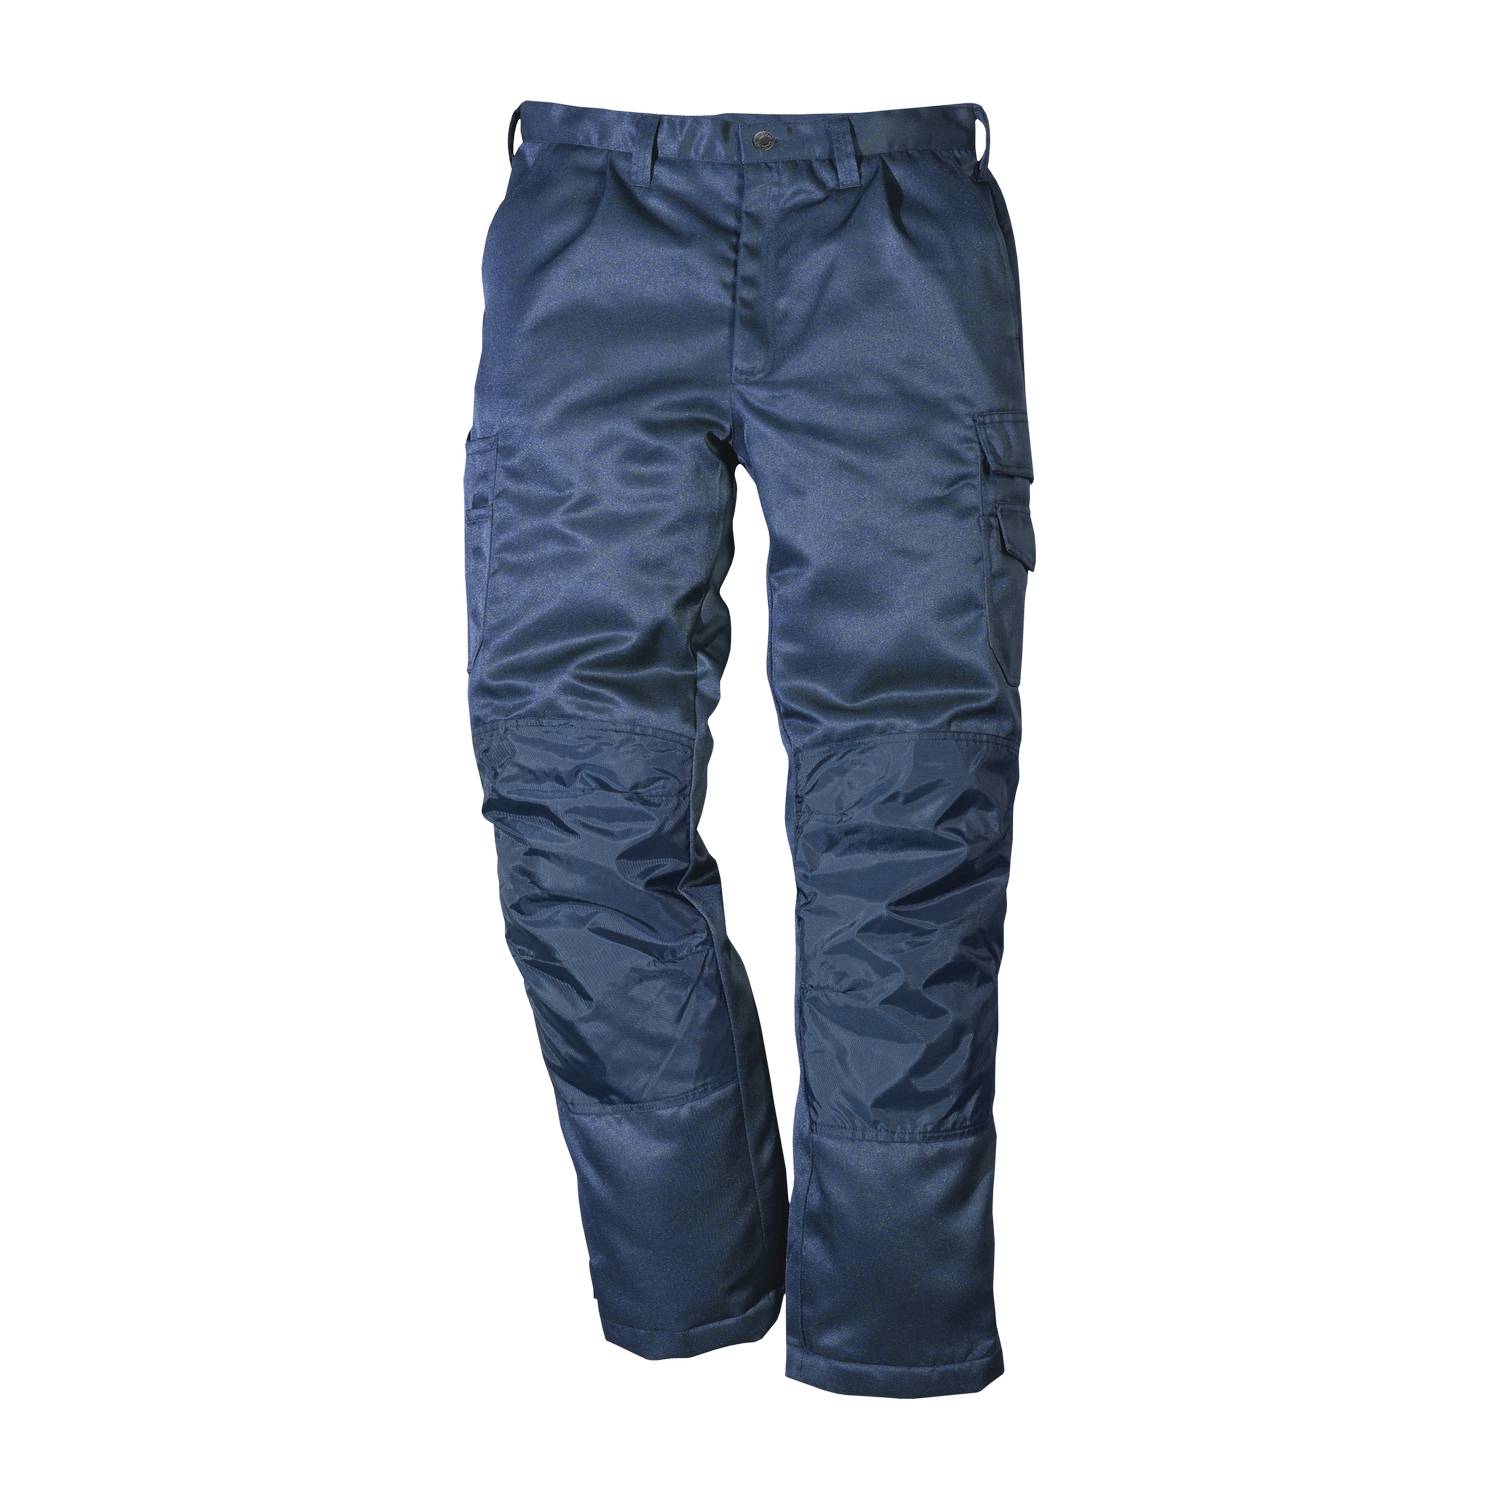 Fristads zimske radne hlače 100492-540